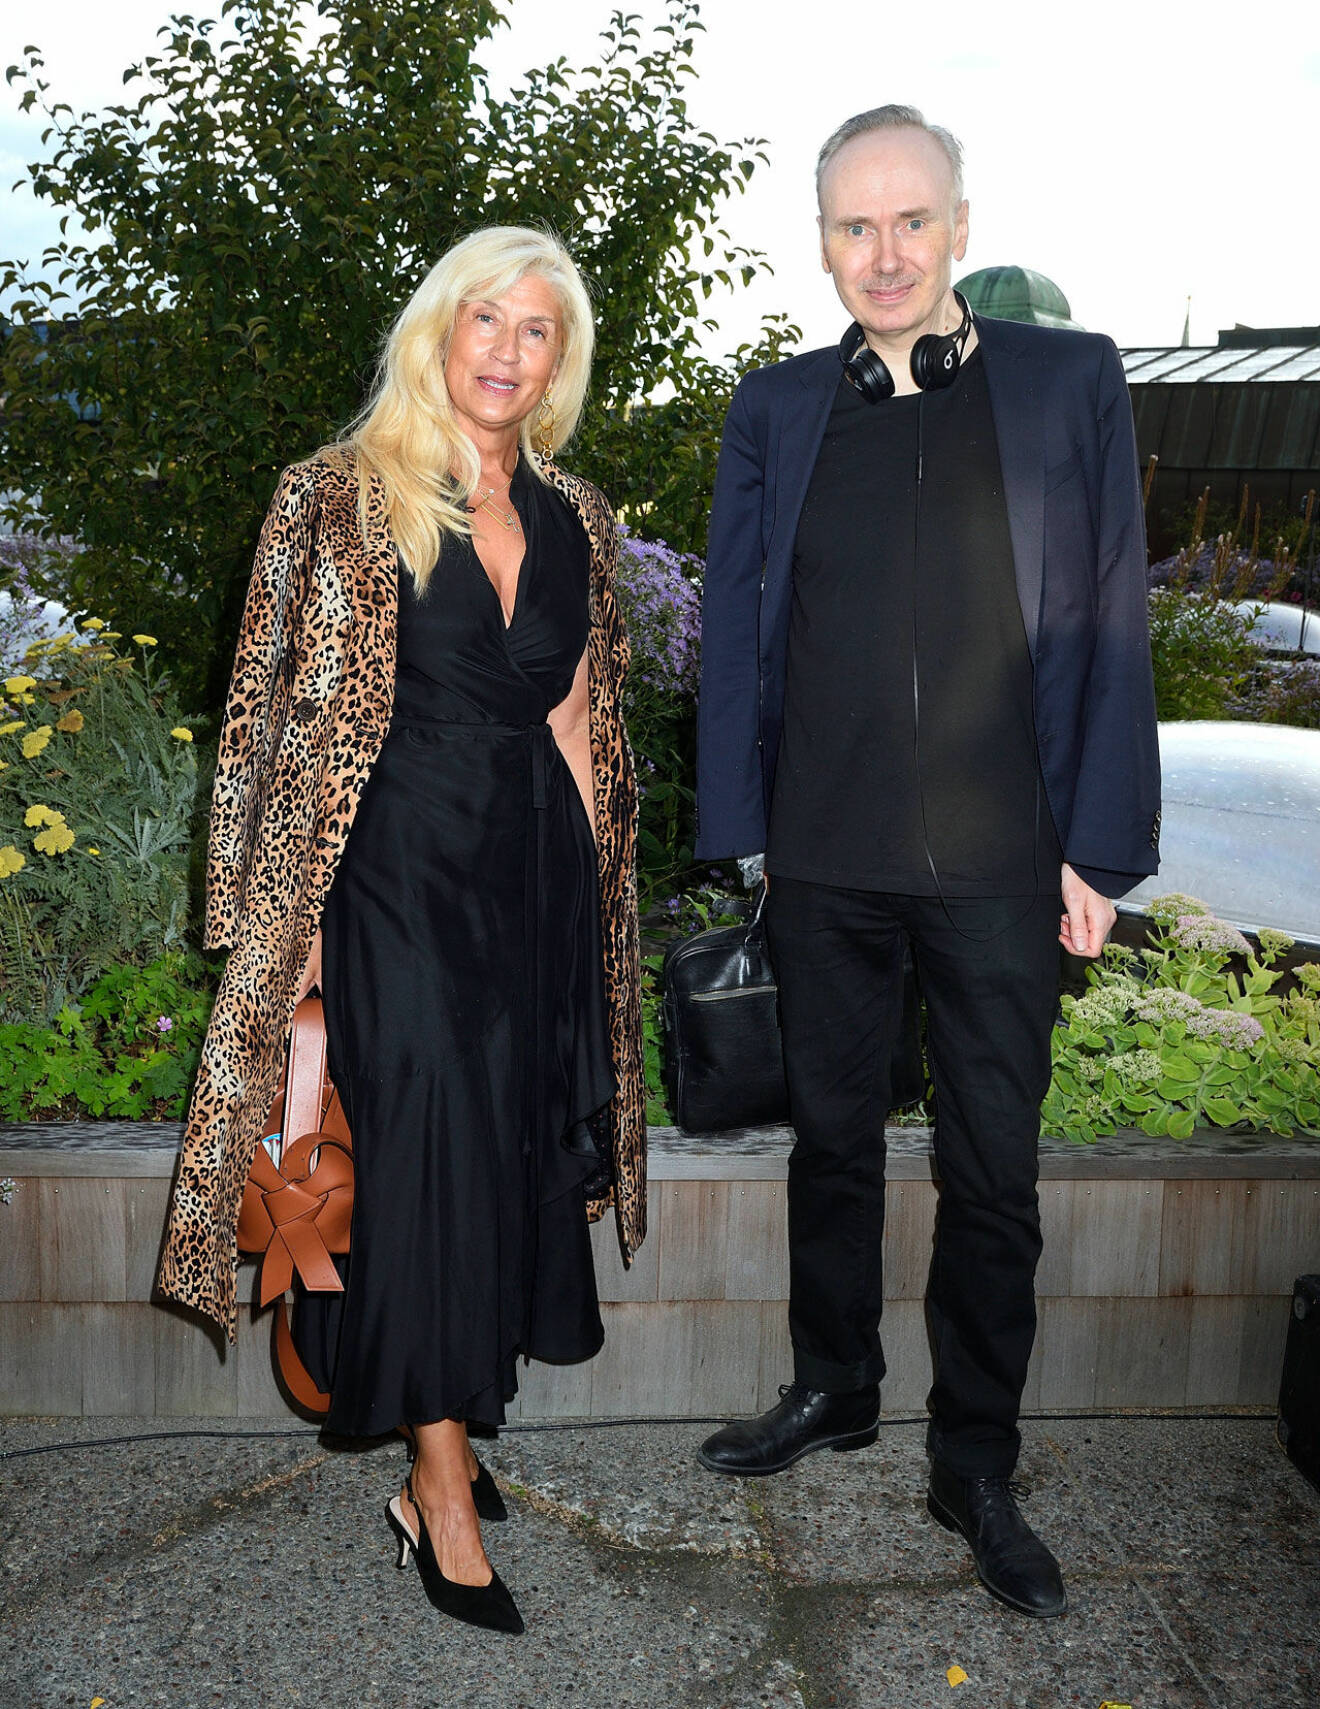 Kvällens trevligaste duo! Hovstylisten Tina Törnquist och designern Pär Engsheden.